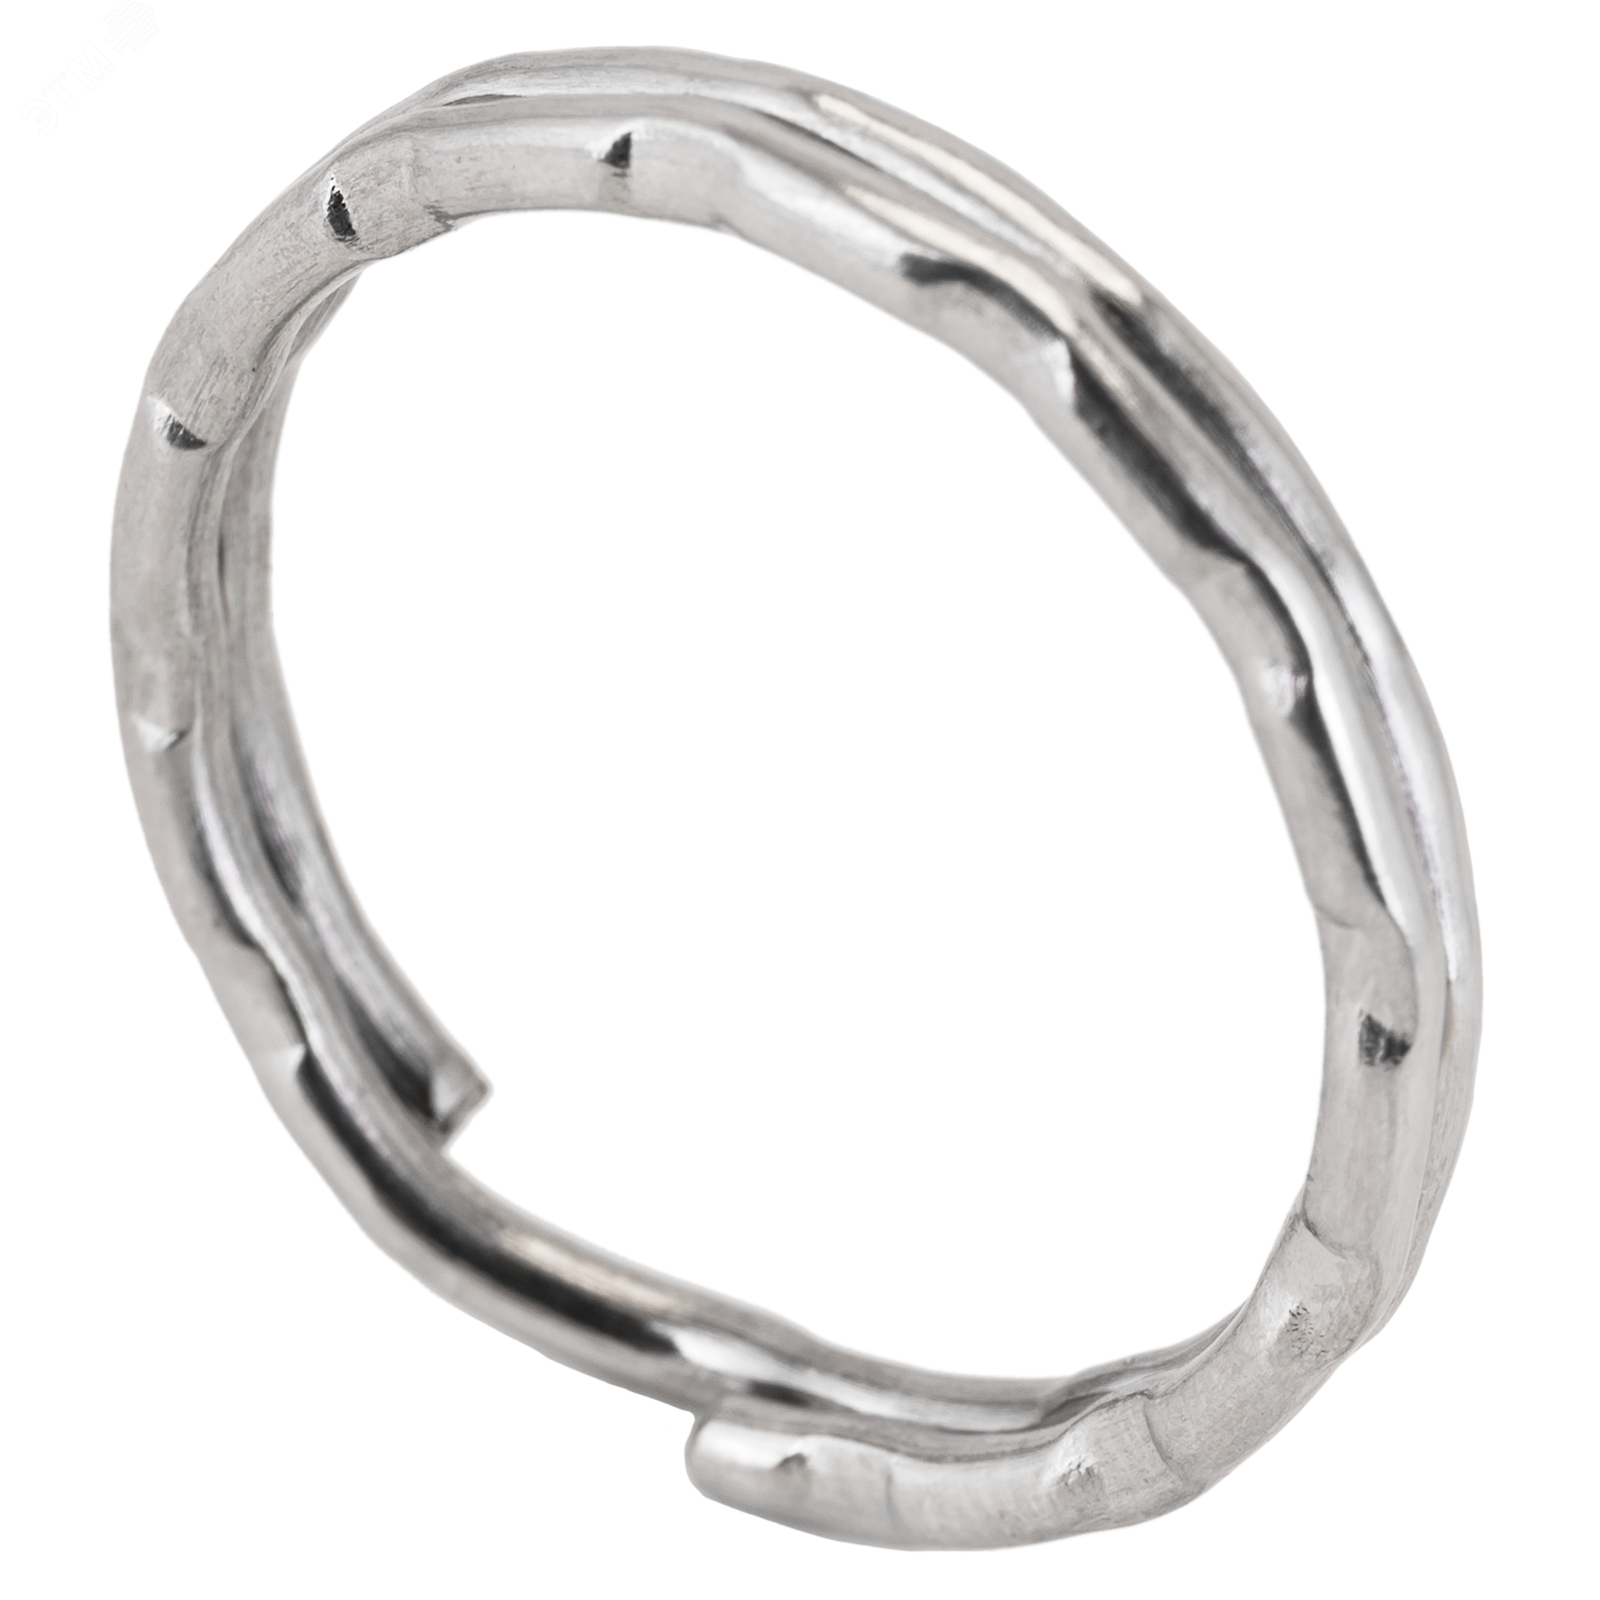 Кольцо для ключей из никелированной стали среднее фигурное d=24мм, Аллюр 3104 ПТК Компания